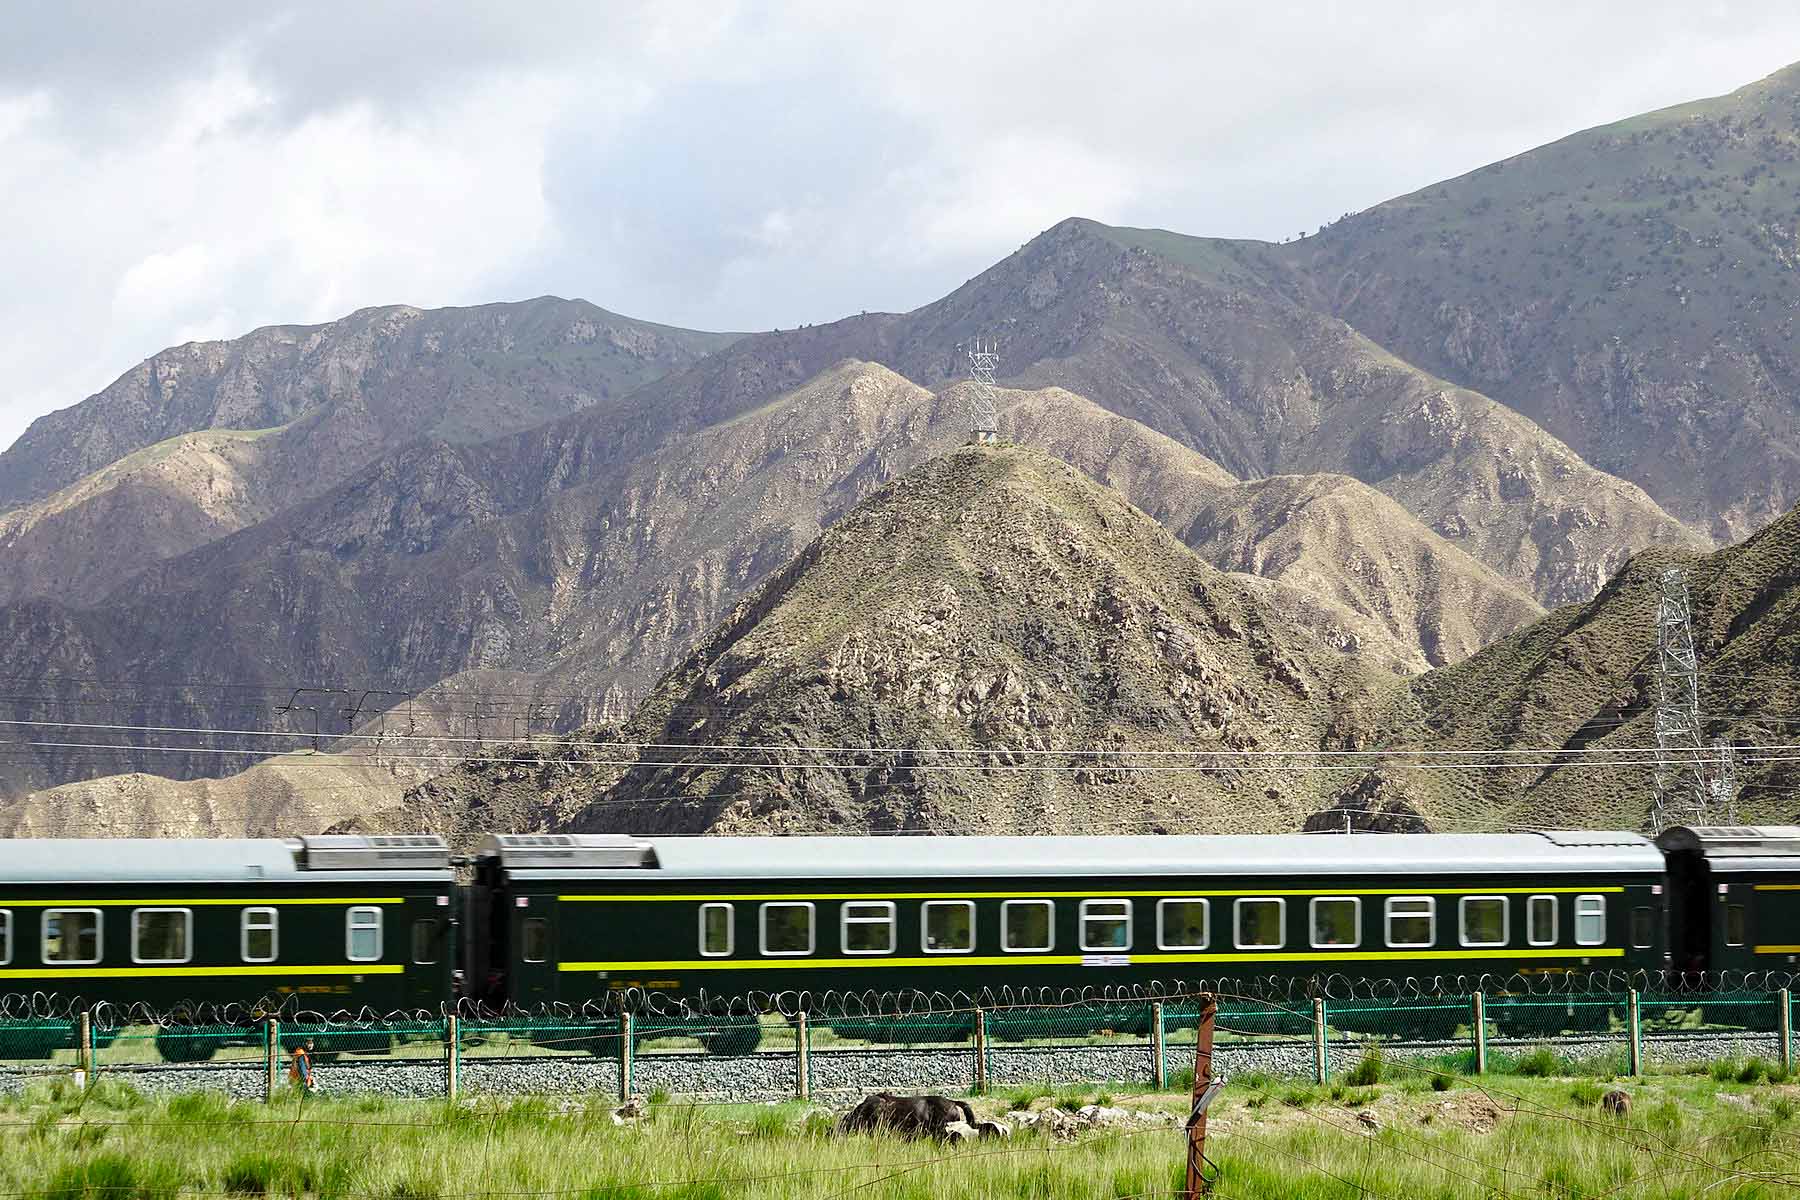 青藏铁路图片